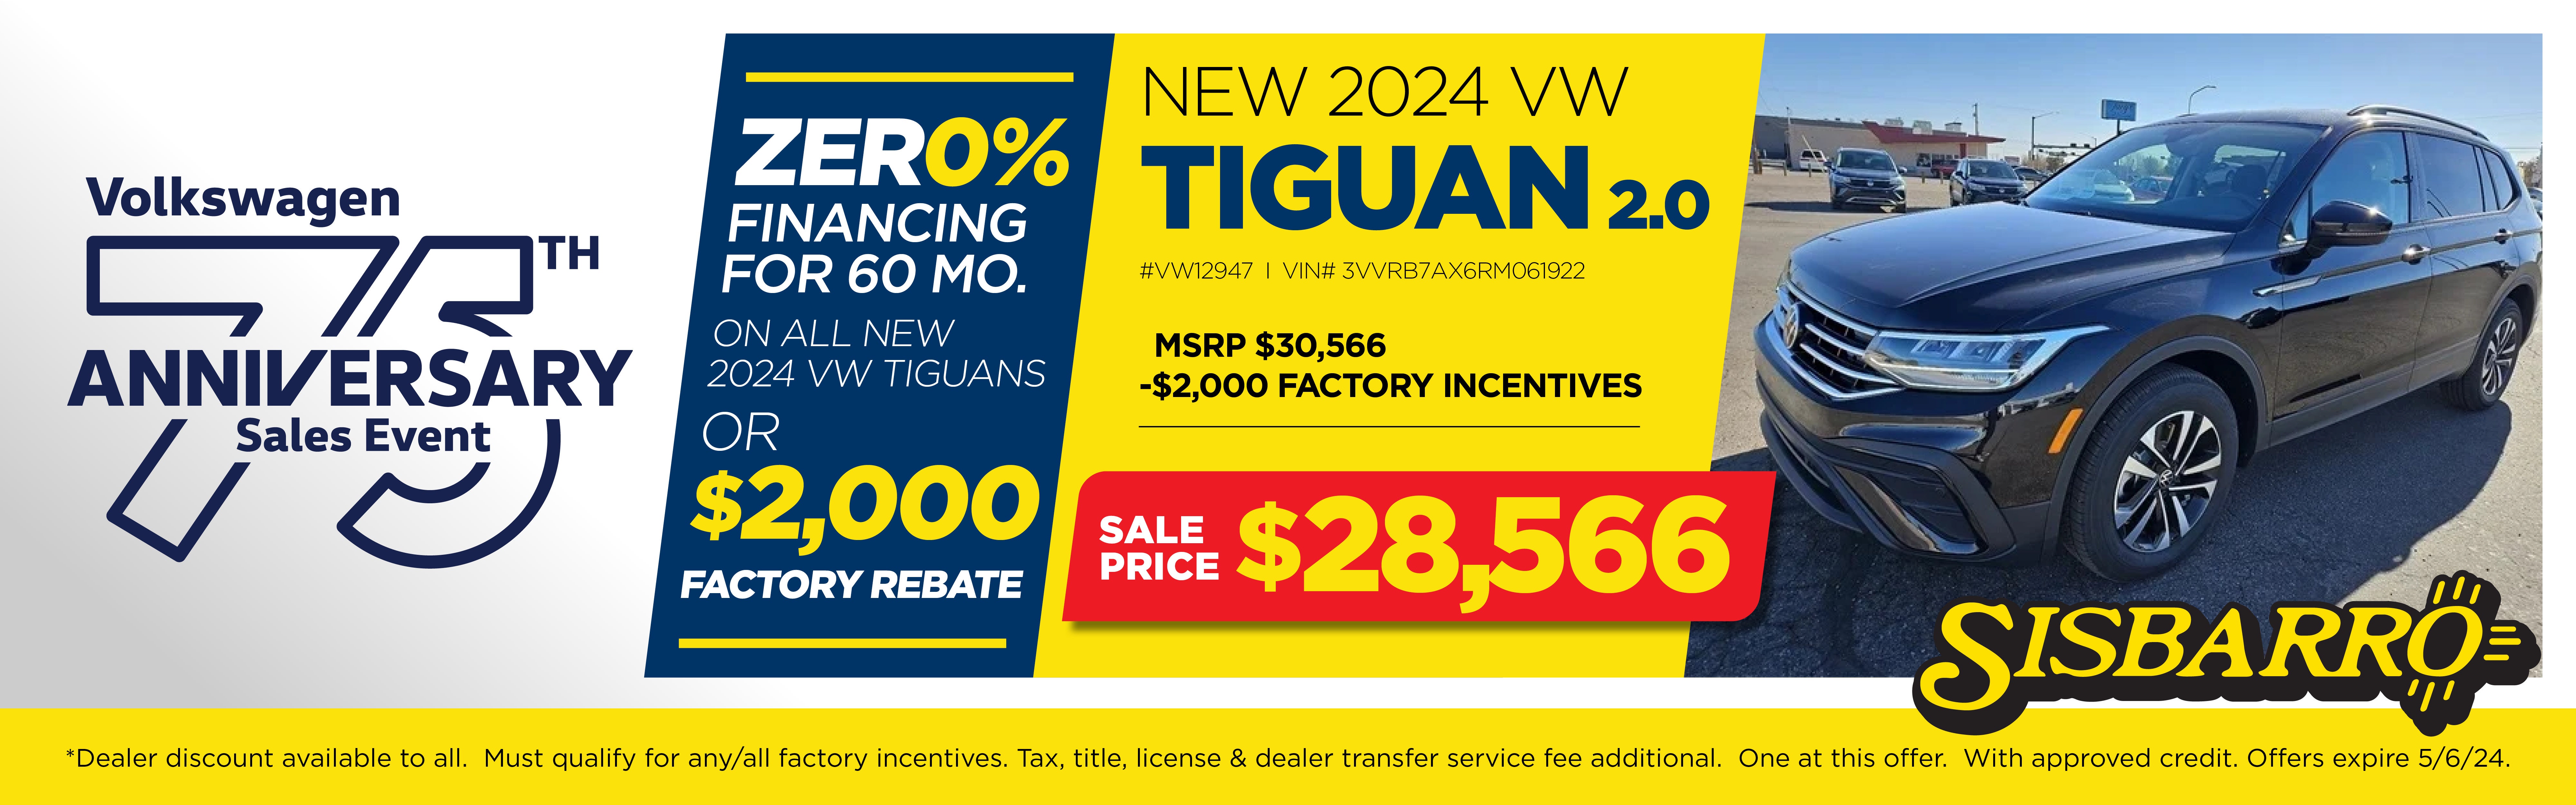 2024 VW Tiguan 2.0